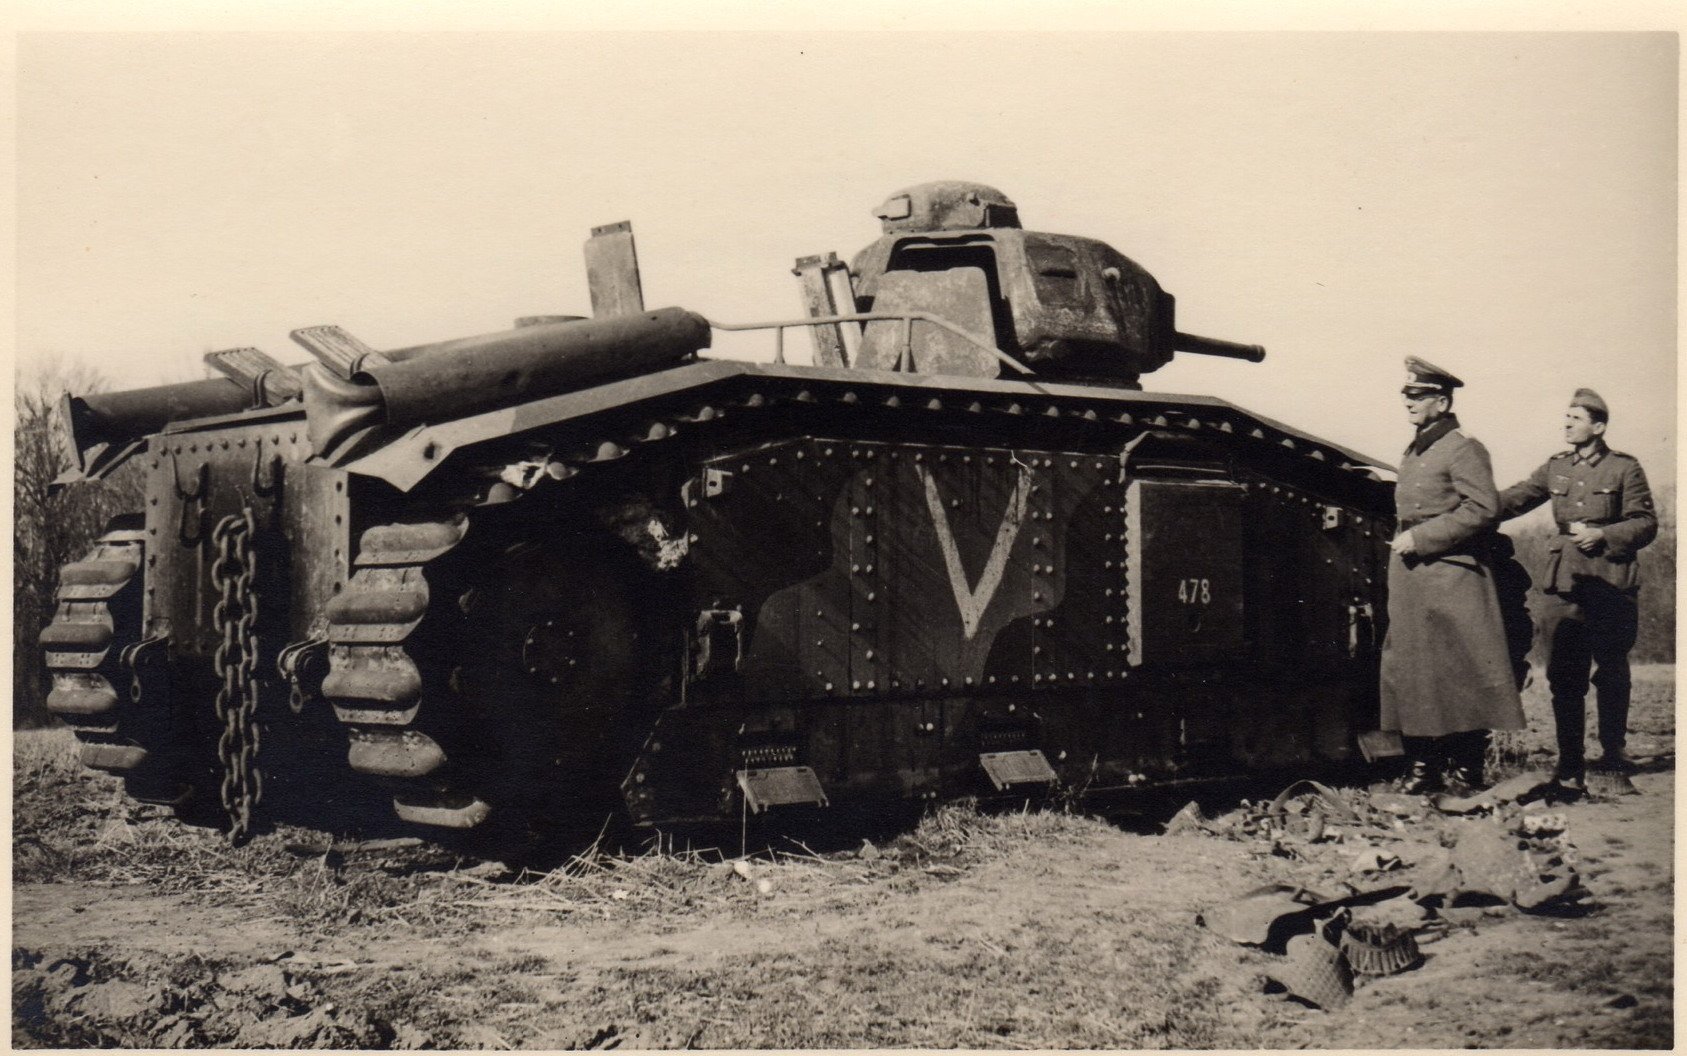 Ss tanks. Французский танк Char b1-bis. Французский танк в1 второй мировой войны. Тяжелый французский танк Char b1. Подбитые французские танки 1940.